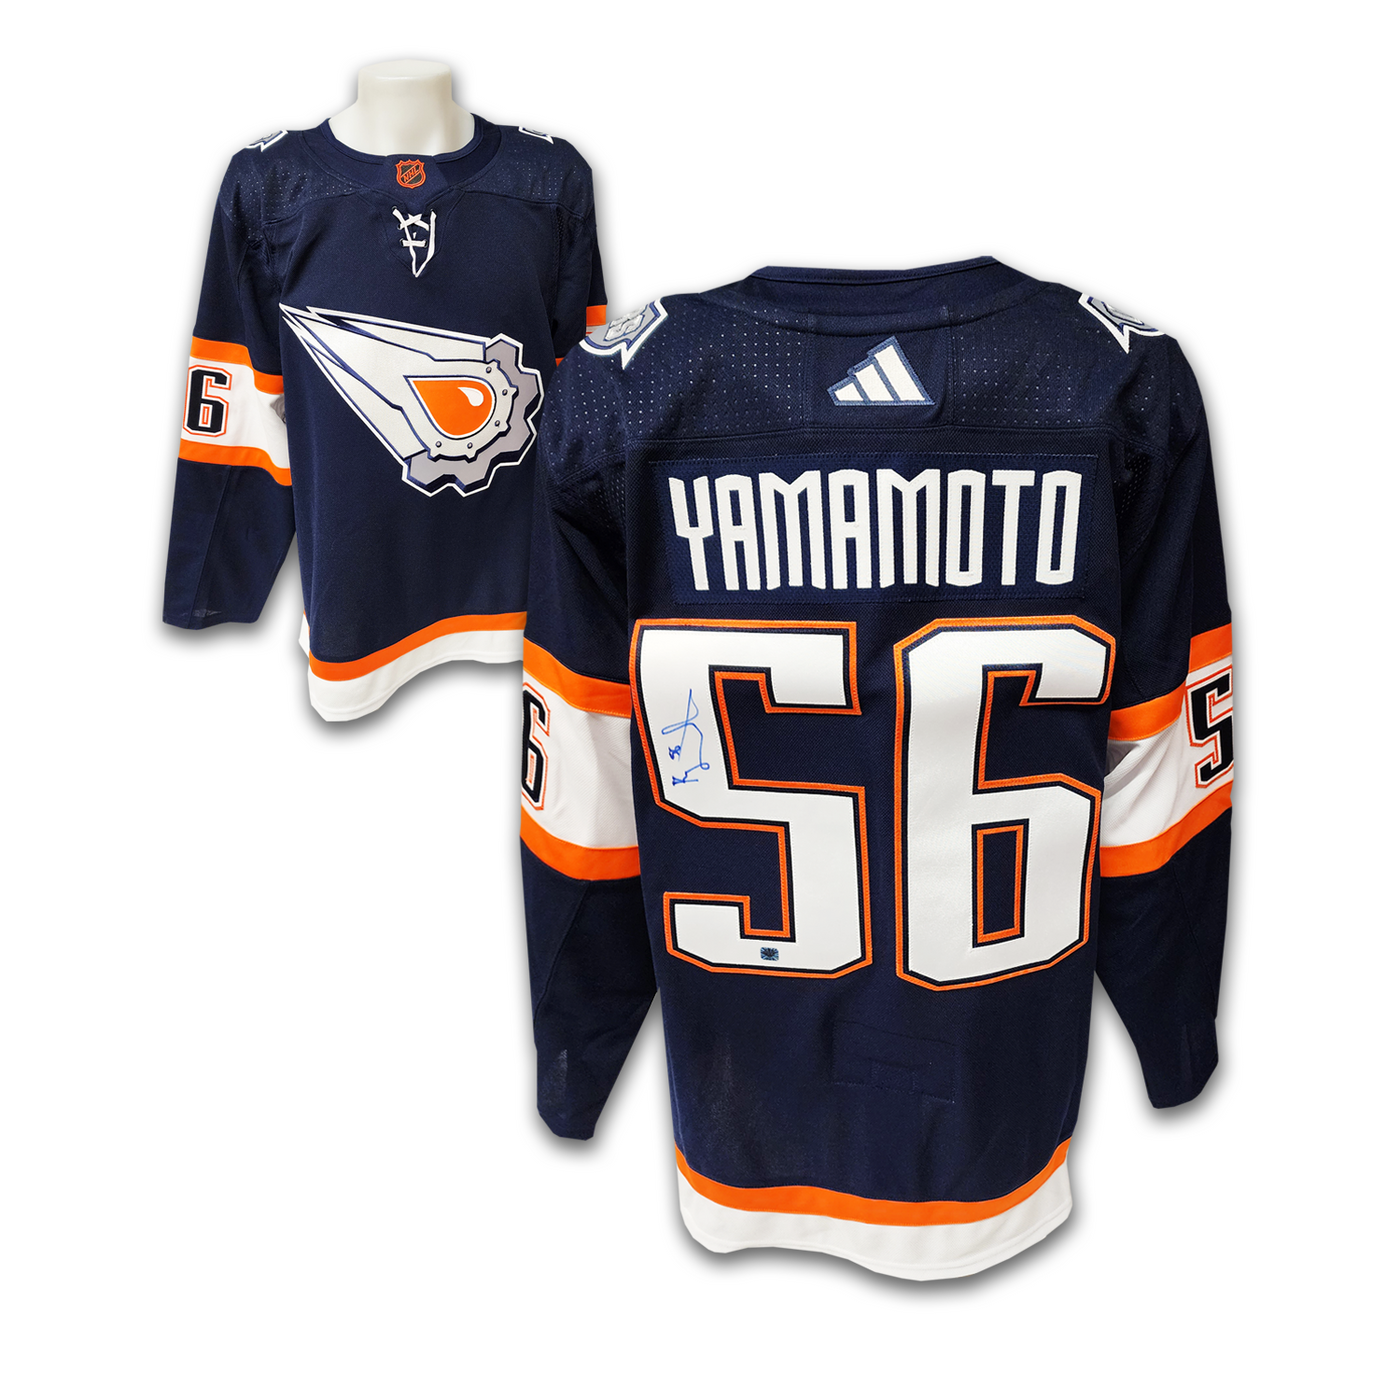 Kailer Yamamoto Autographed Edmonton Oilers Reverse Retro 2.0 Adidas Jersey